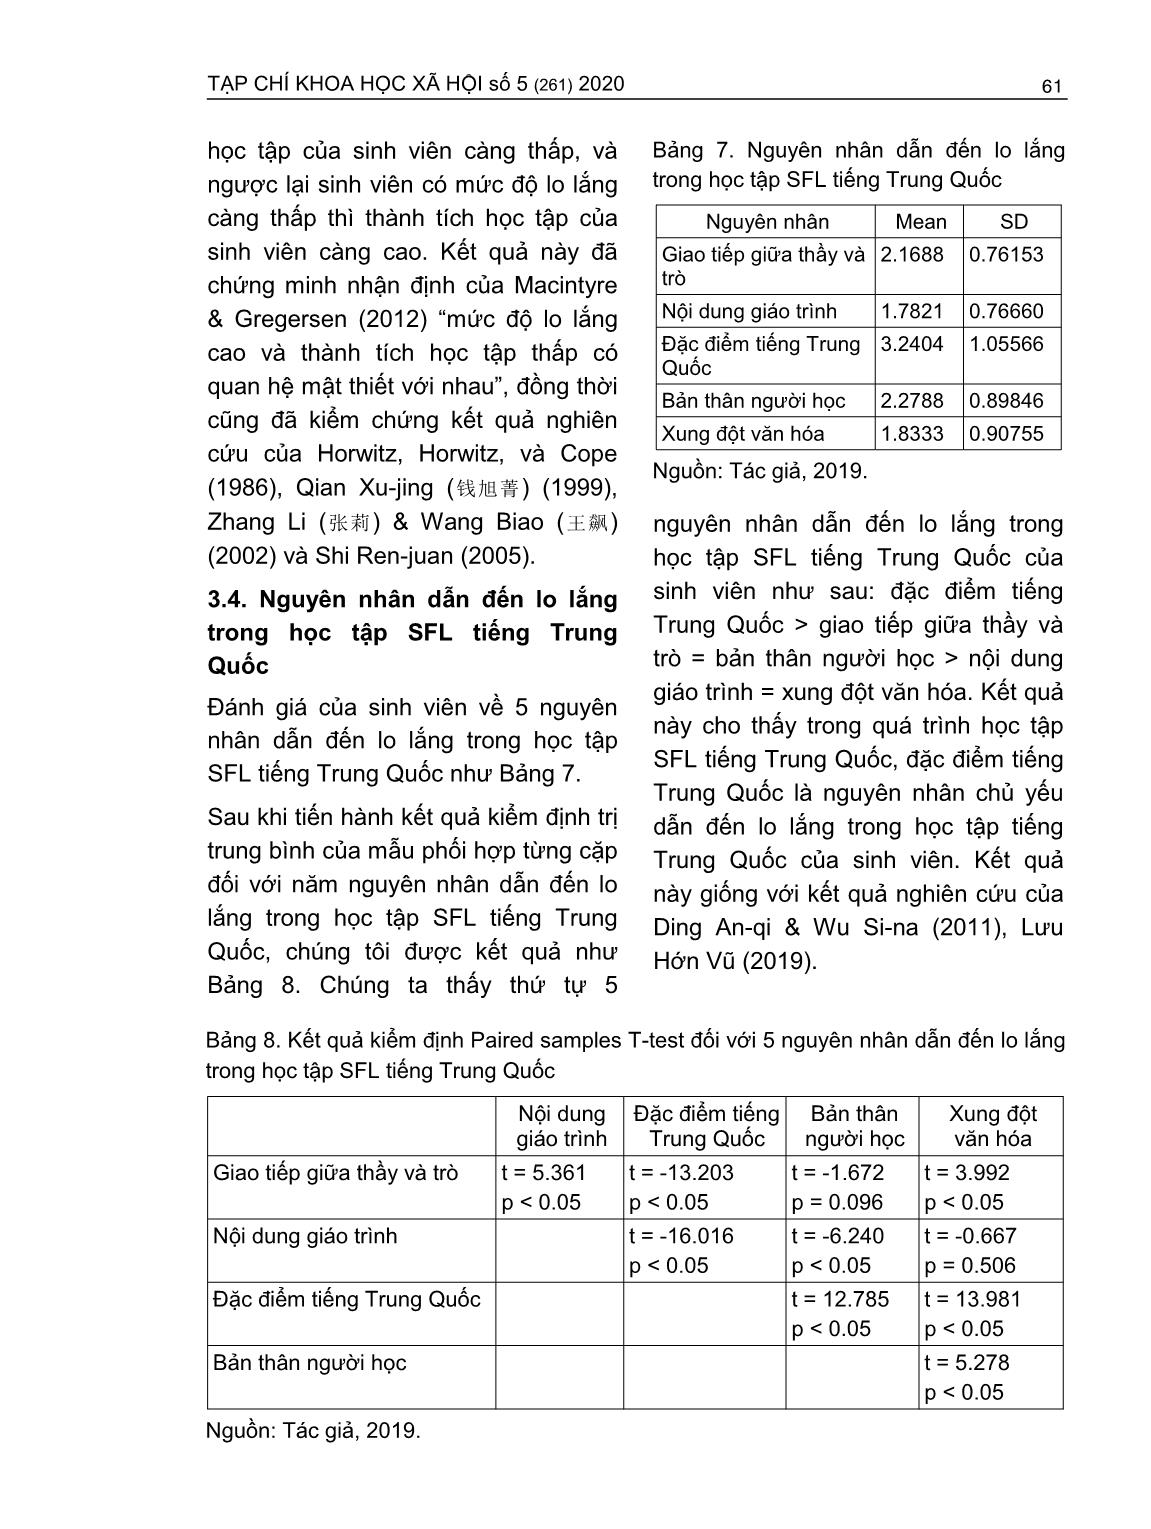 Lo lắng trong học tập tiếng Trung Quốc - Ngoại ngữ thứ hai của sinh viên ngành Ngôn ngữ anh (Trường hợp Trường Đại học Ngân hàng thành phố Hồ Chí Minh) trang 7